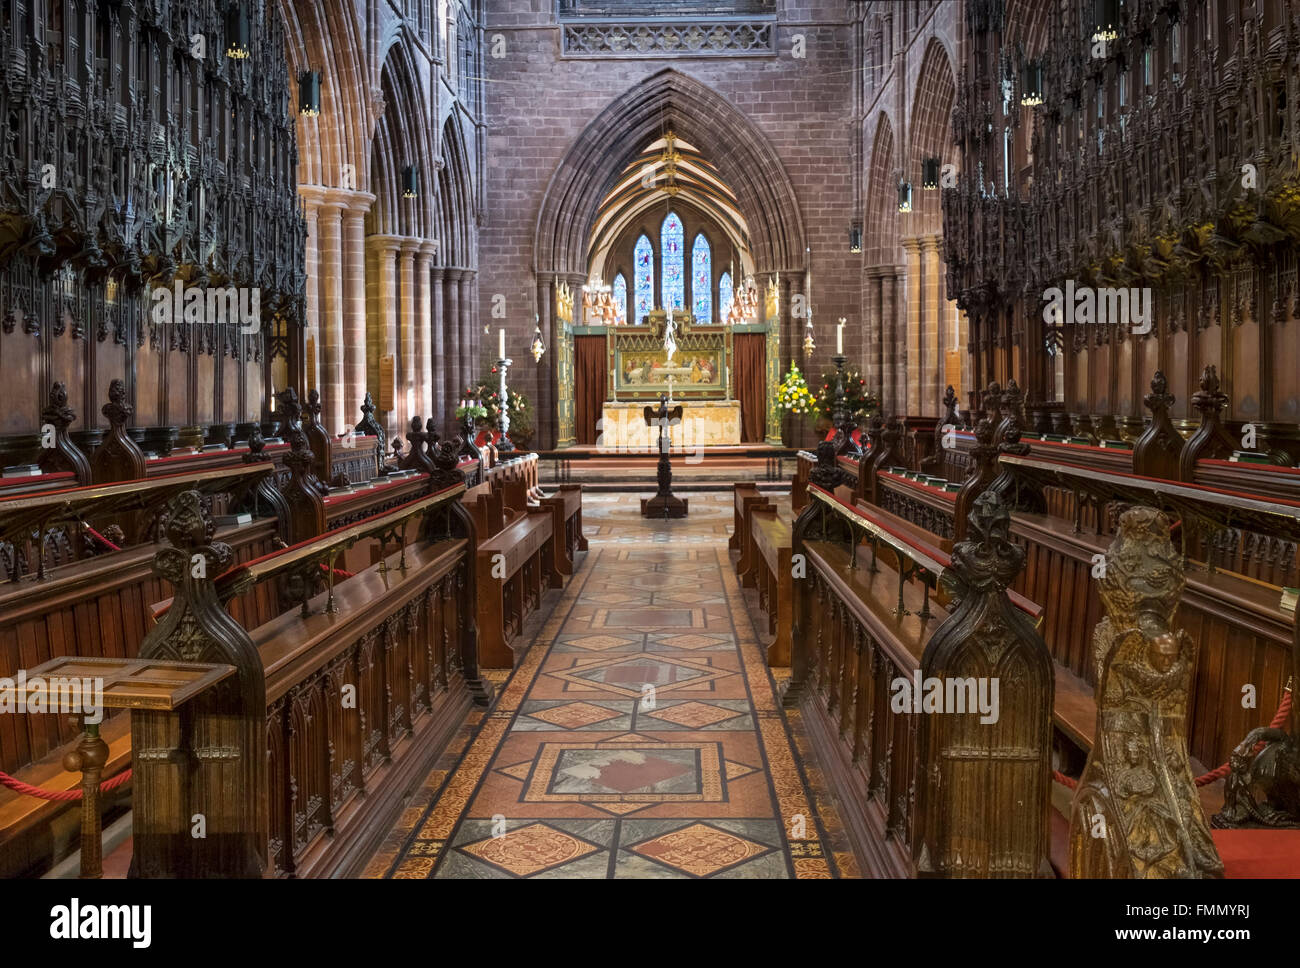 Das Chorgestühl und reich verzierten Kirchenschiff von Chester Kathedrale, Chester, Cheshire, England, Vereinigtes Königreich Stockfoto